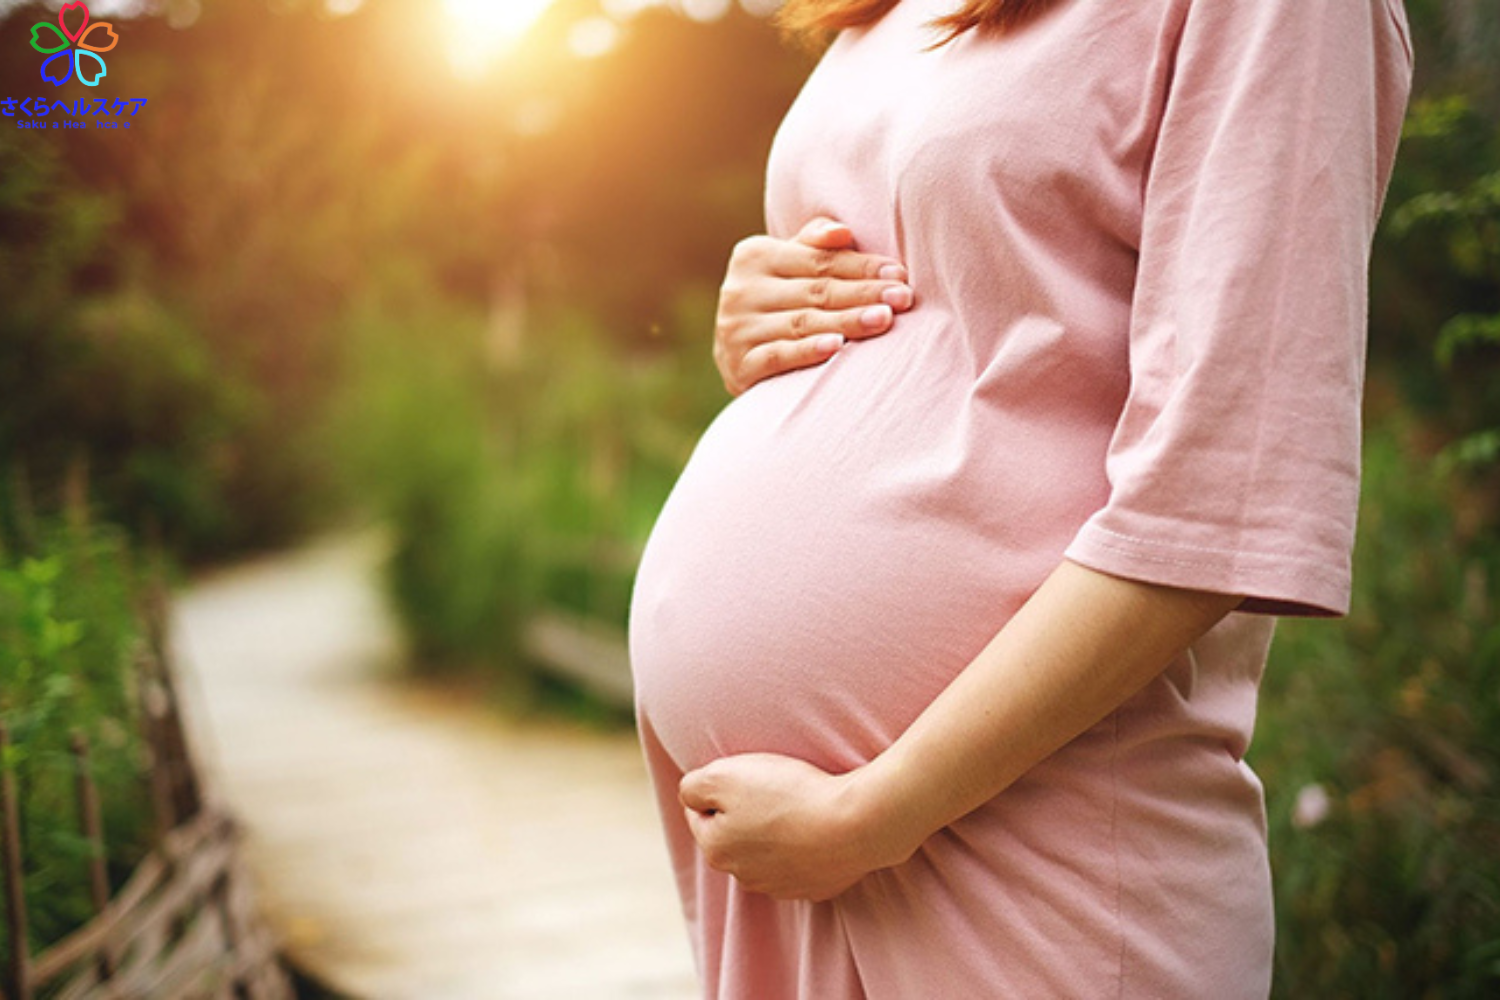 phụ nữ đang mang thai không nên sử dụng minoxidil